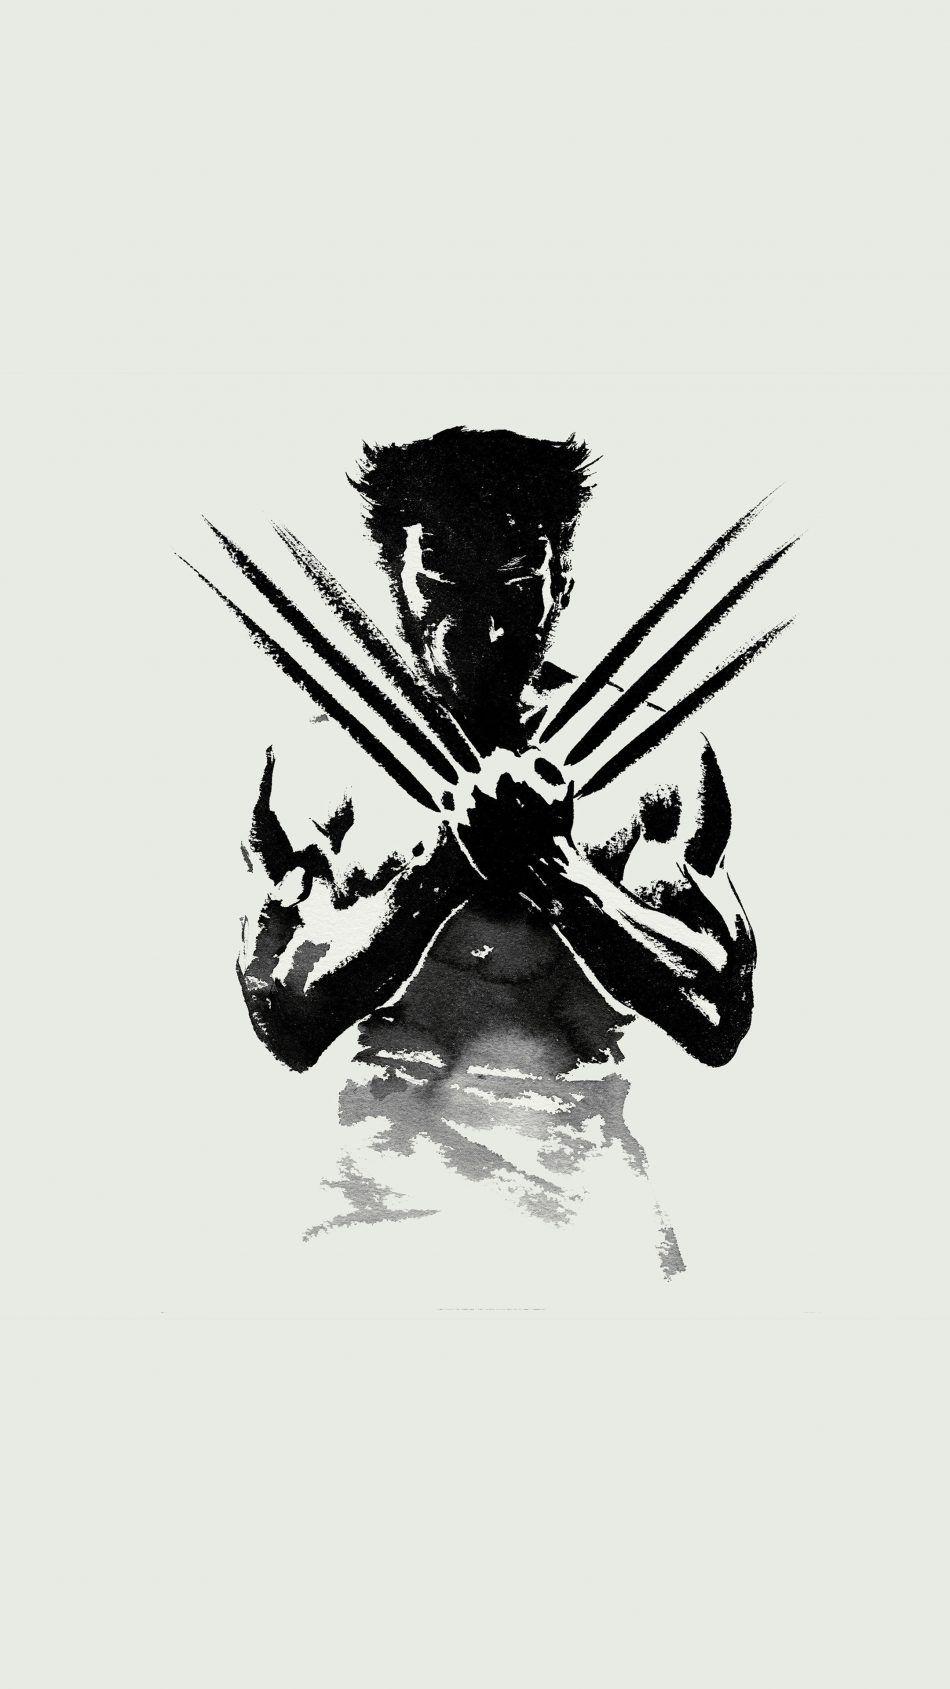 Wolverine Fan Artwork 4K Ultra HD Mobile Wallpaper. Wolverine artwork, Wolverine art, Wolverine comic